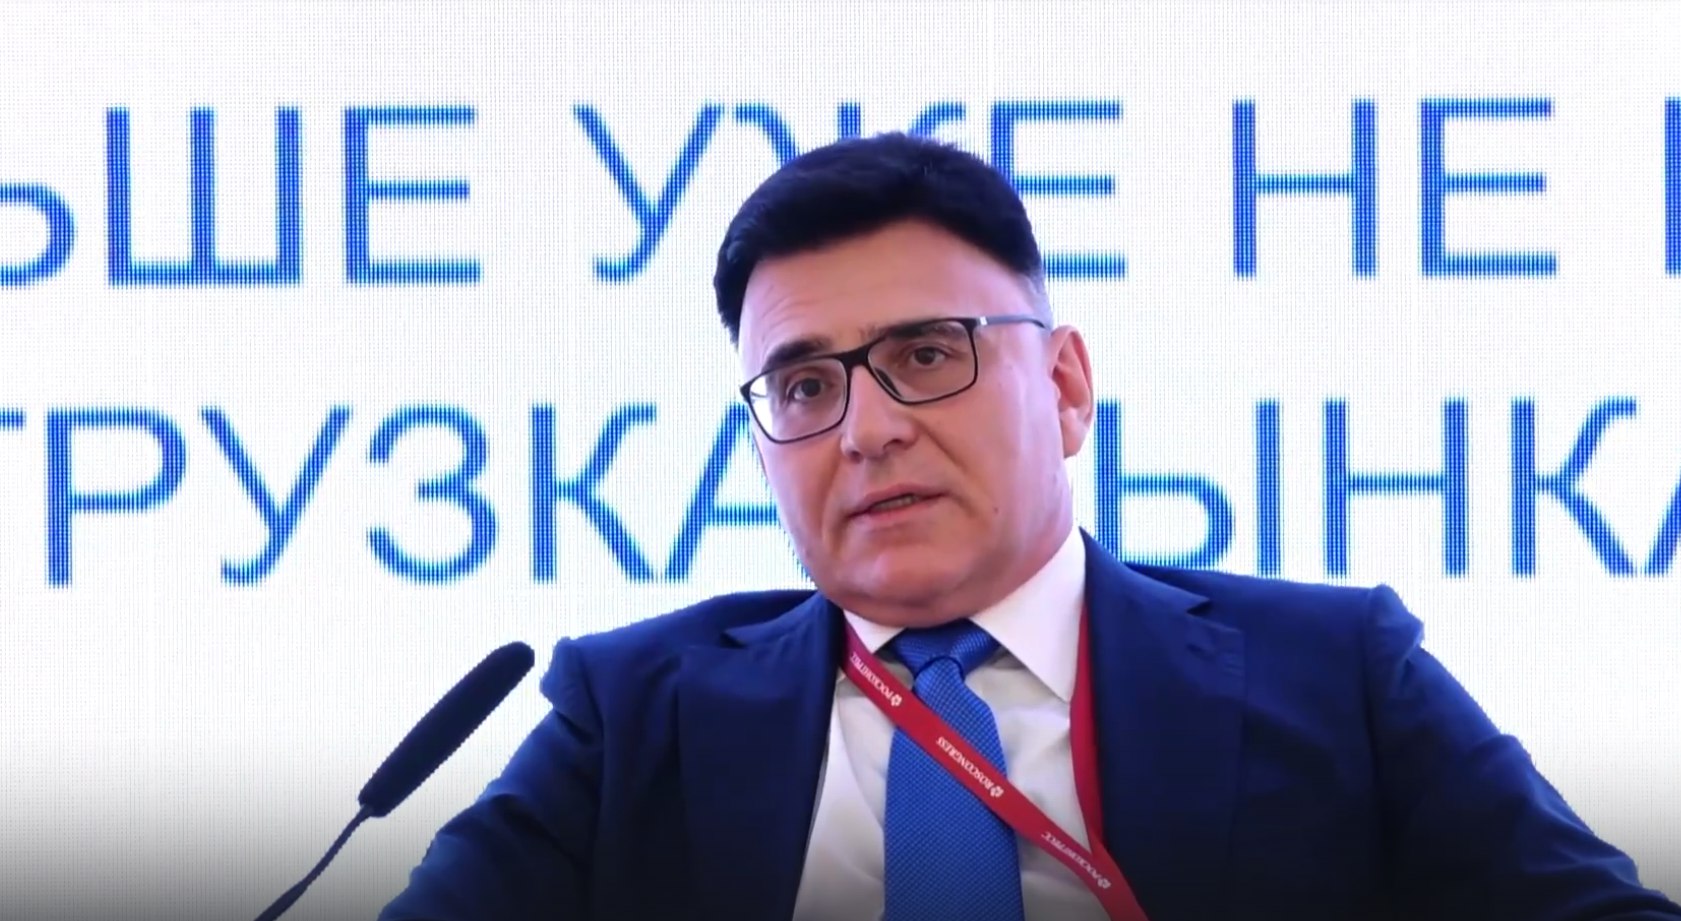 На фото генеральный директор «Газпром-Медиа-Холдинг» Александр Жаров. Фото: скриншот из видеохостингового сайта RuTube